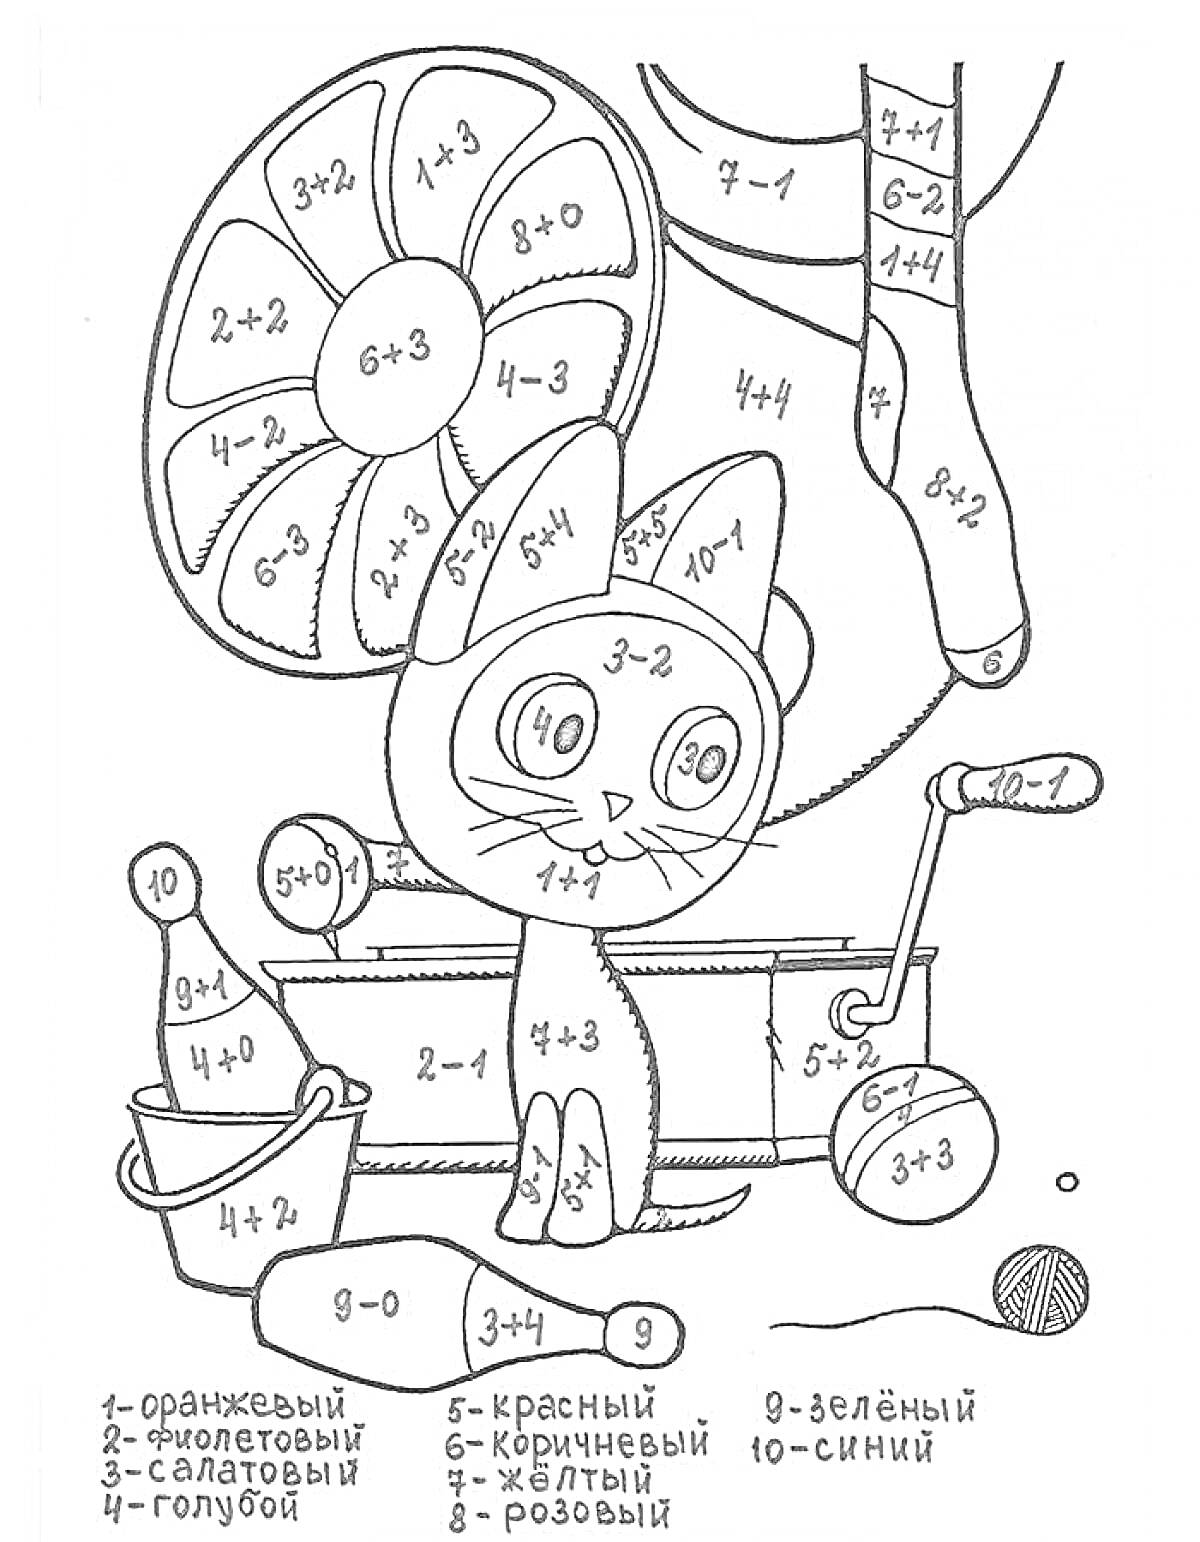 Кот на самокате с круглым вертолетным снарядом, ведром, лопаткой и мячиком, разукраска по математическим примерам